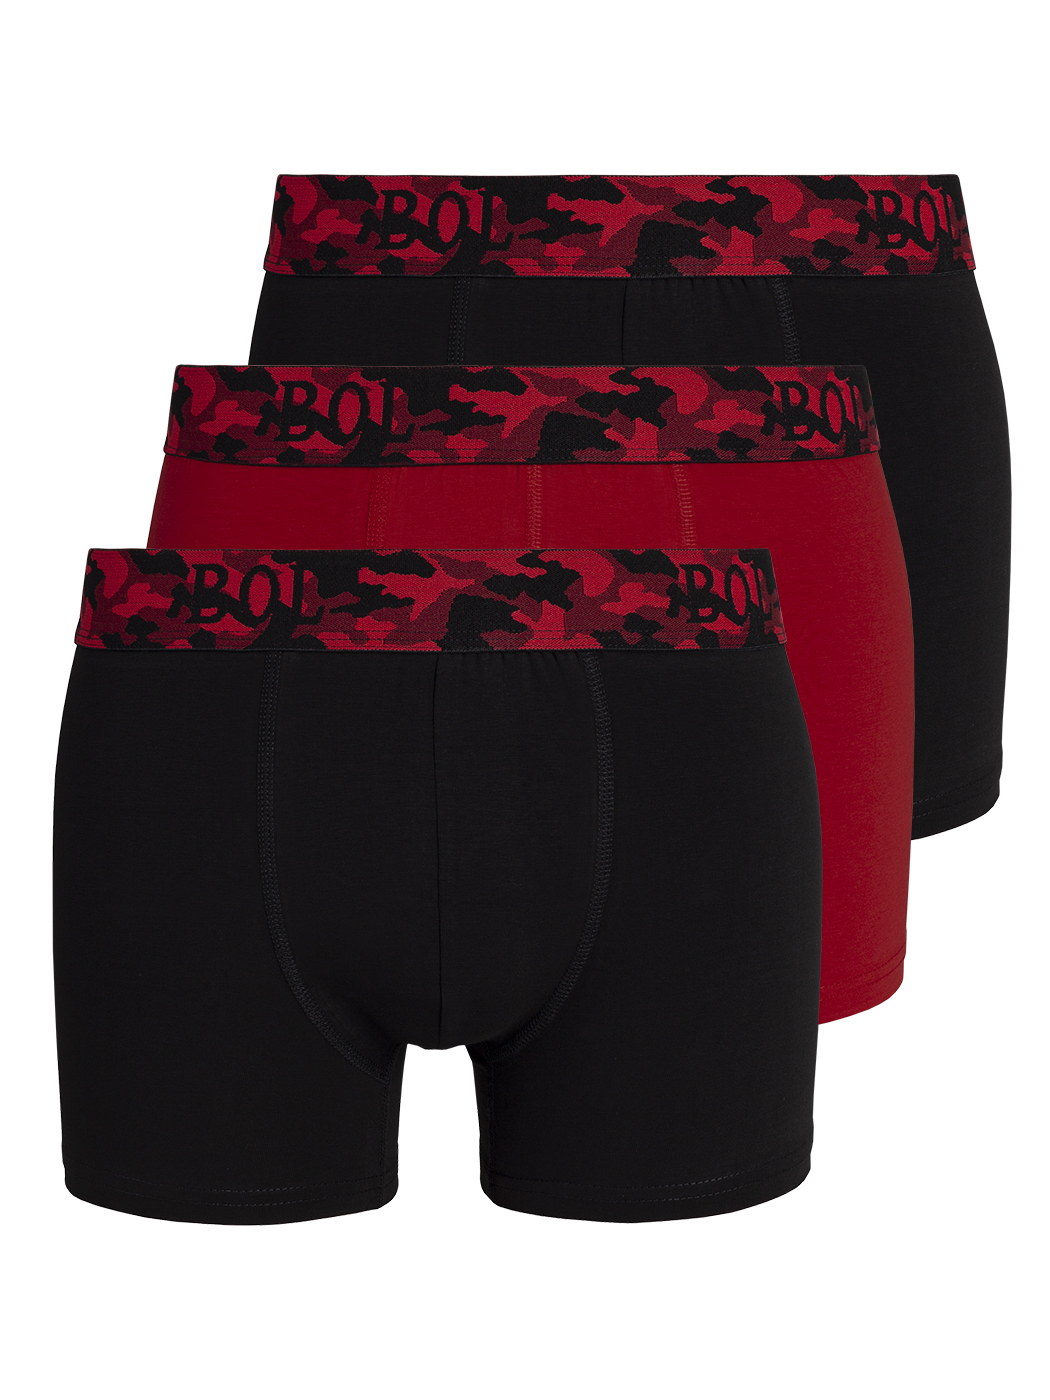 Комплект трусов мужских BOL Men's 178 черных; красных M